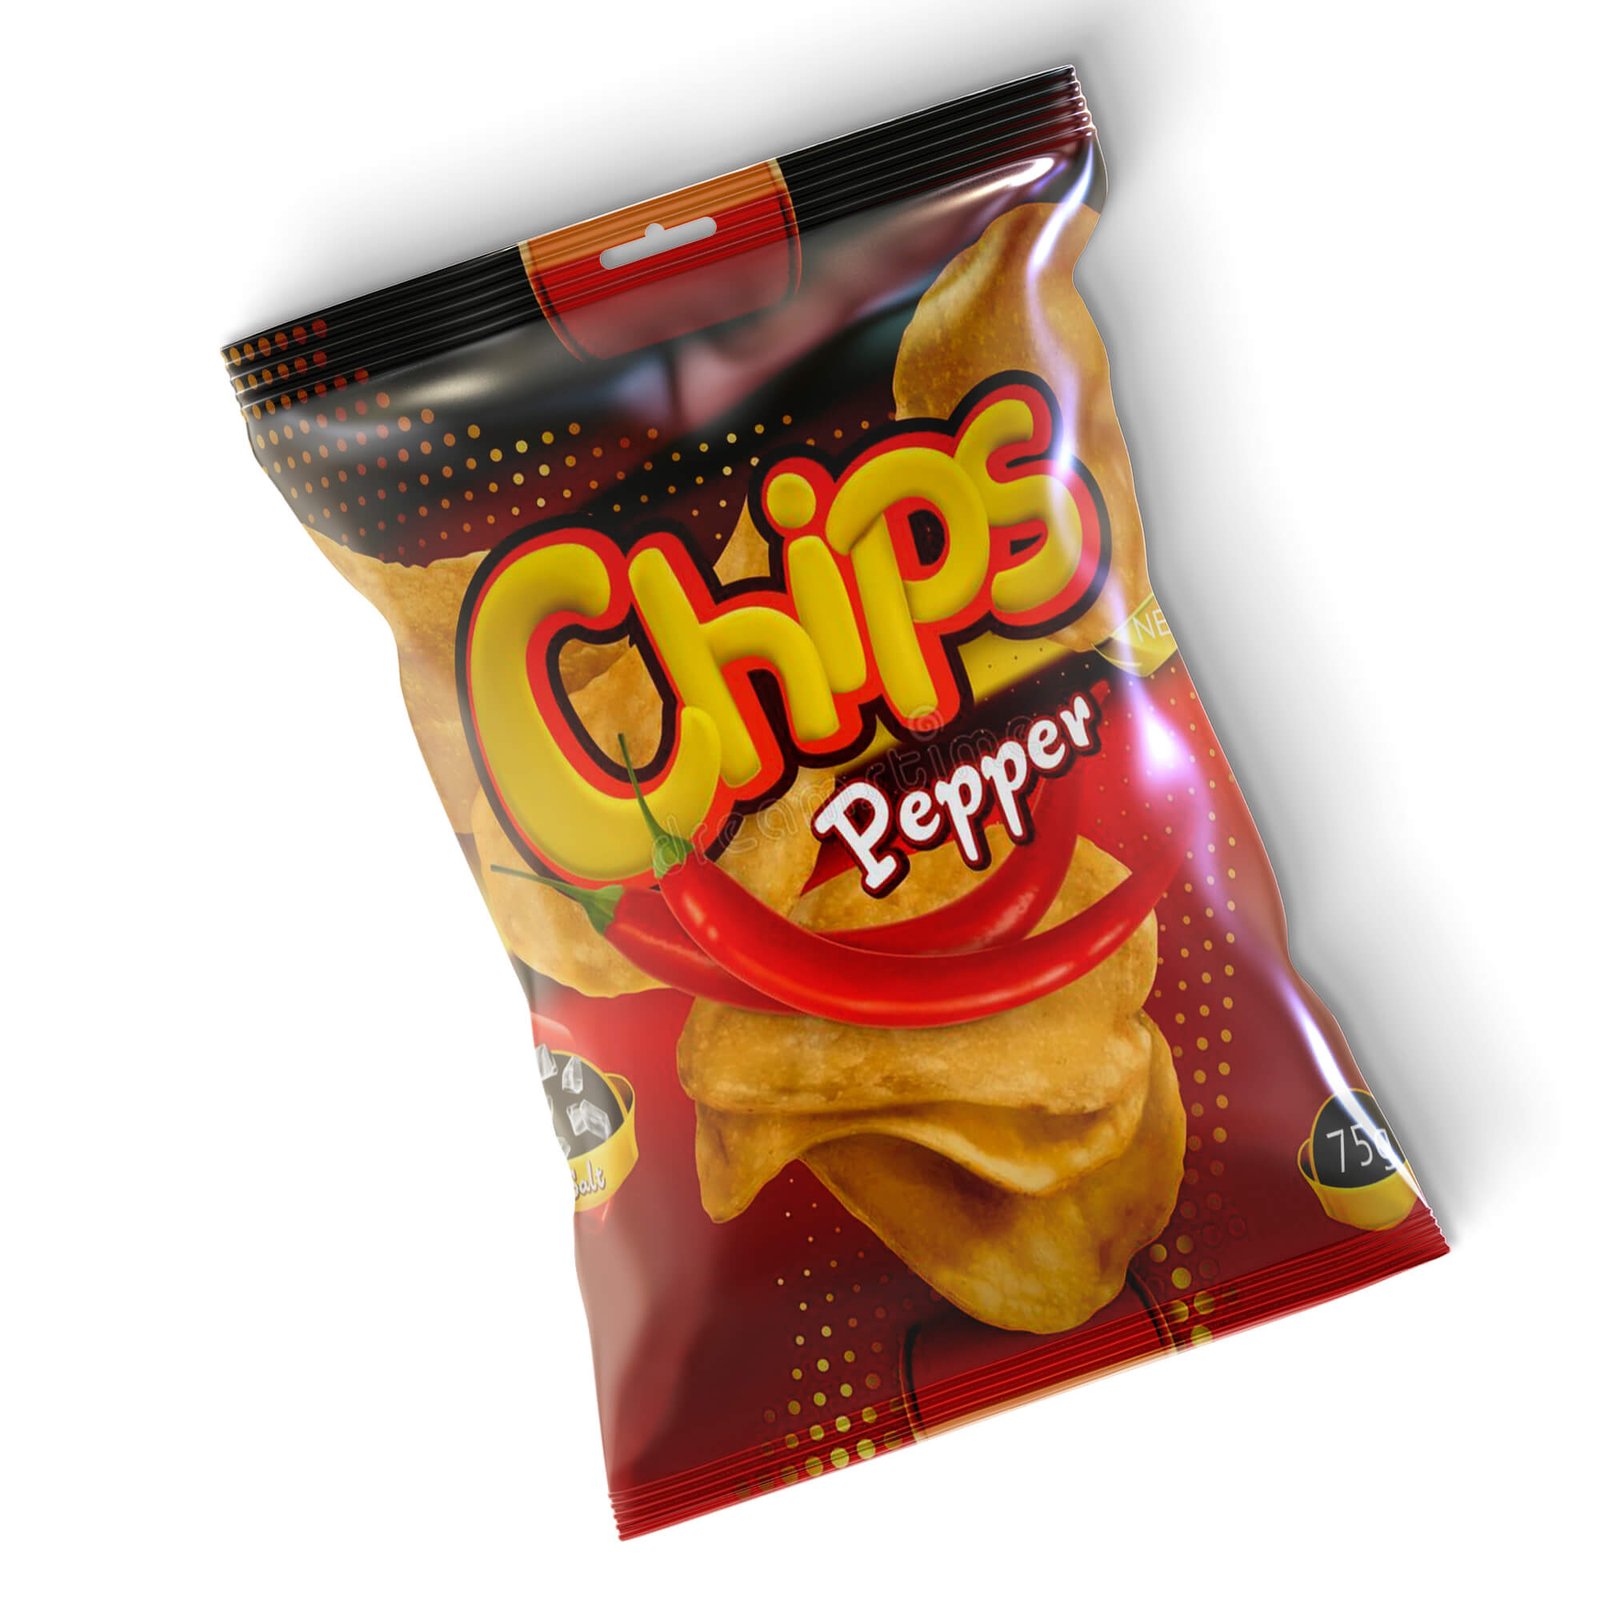 Design Free Chips Bag Mockup PSD Template